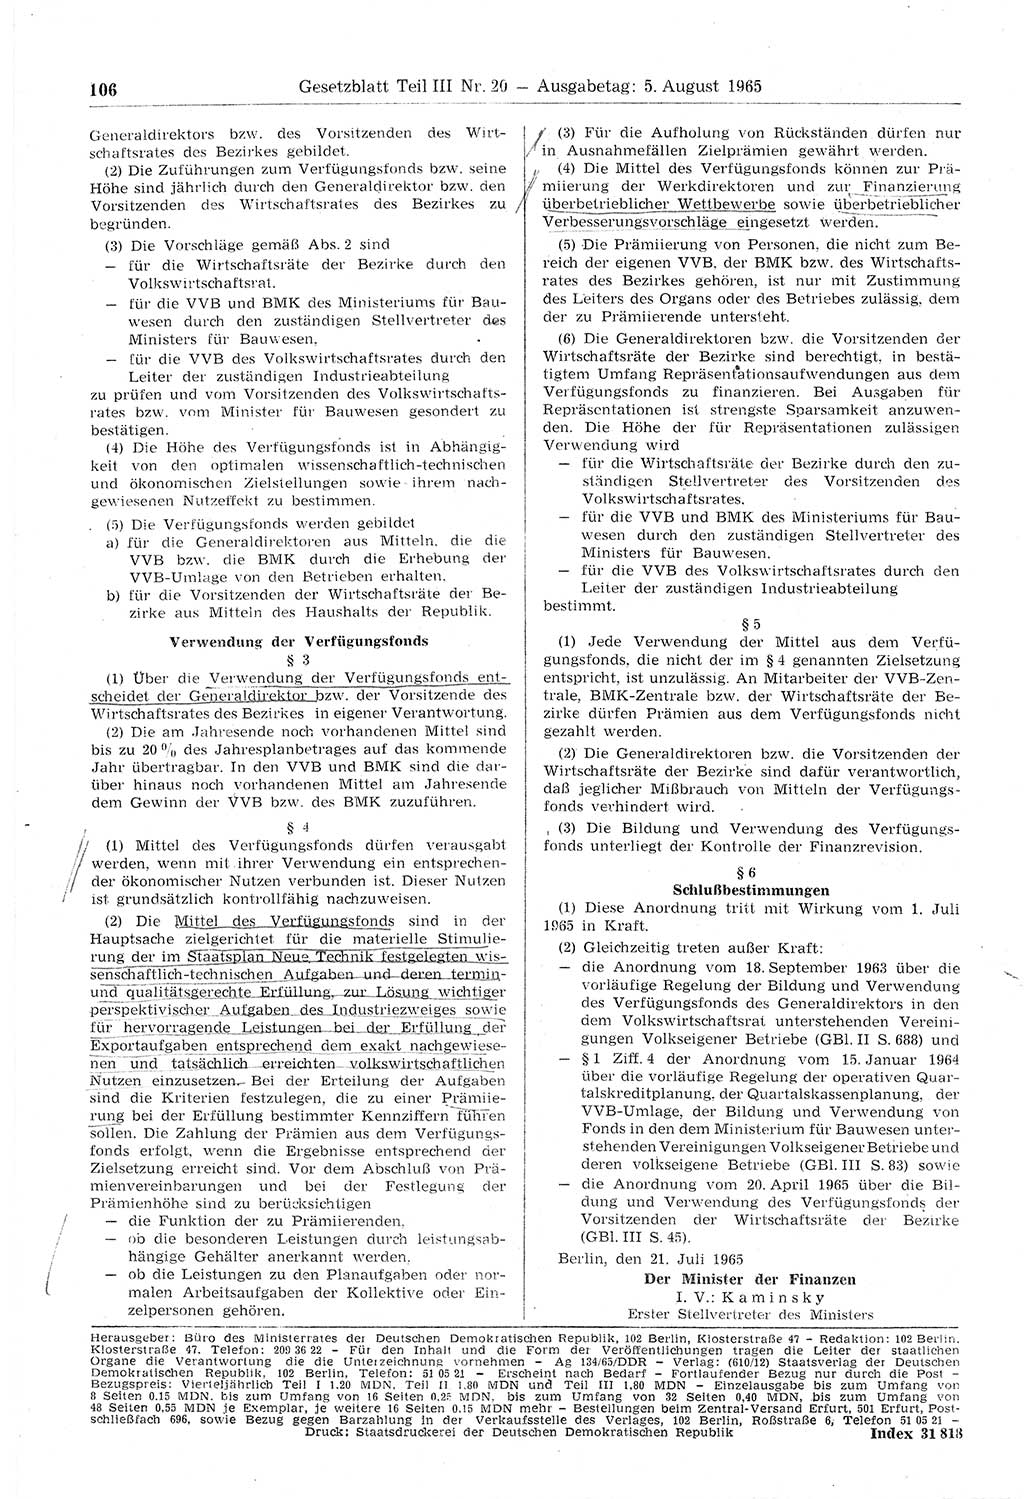 Gesetzblatt (GBl.) der Deutschen Demokratischen Republik (DDR) Teil ⅠⅠⅠ 1965, Seite 106 (GBl. DDR ⅠⅠⅠ 1965, S. 106)